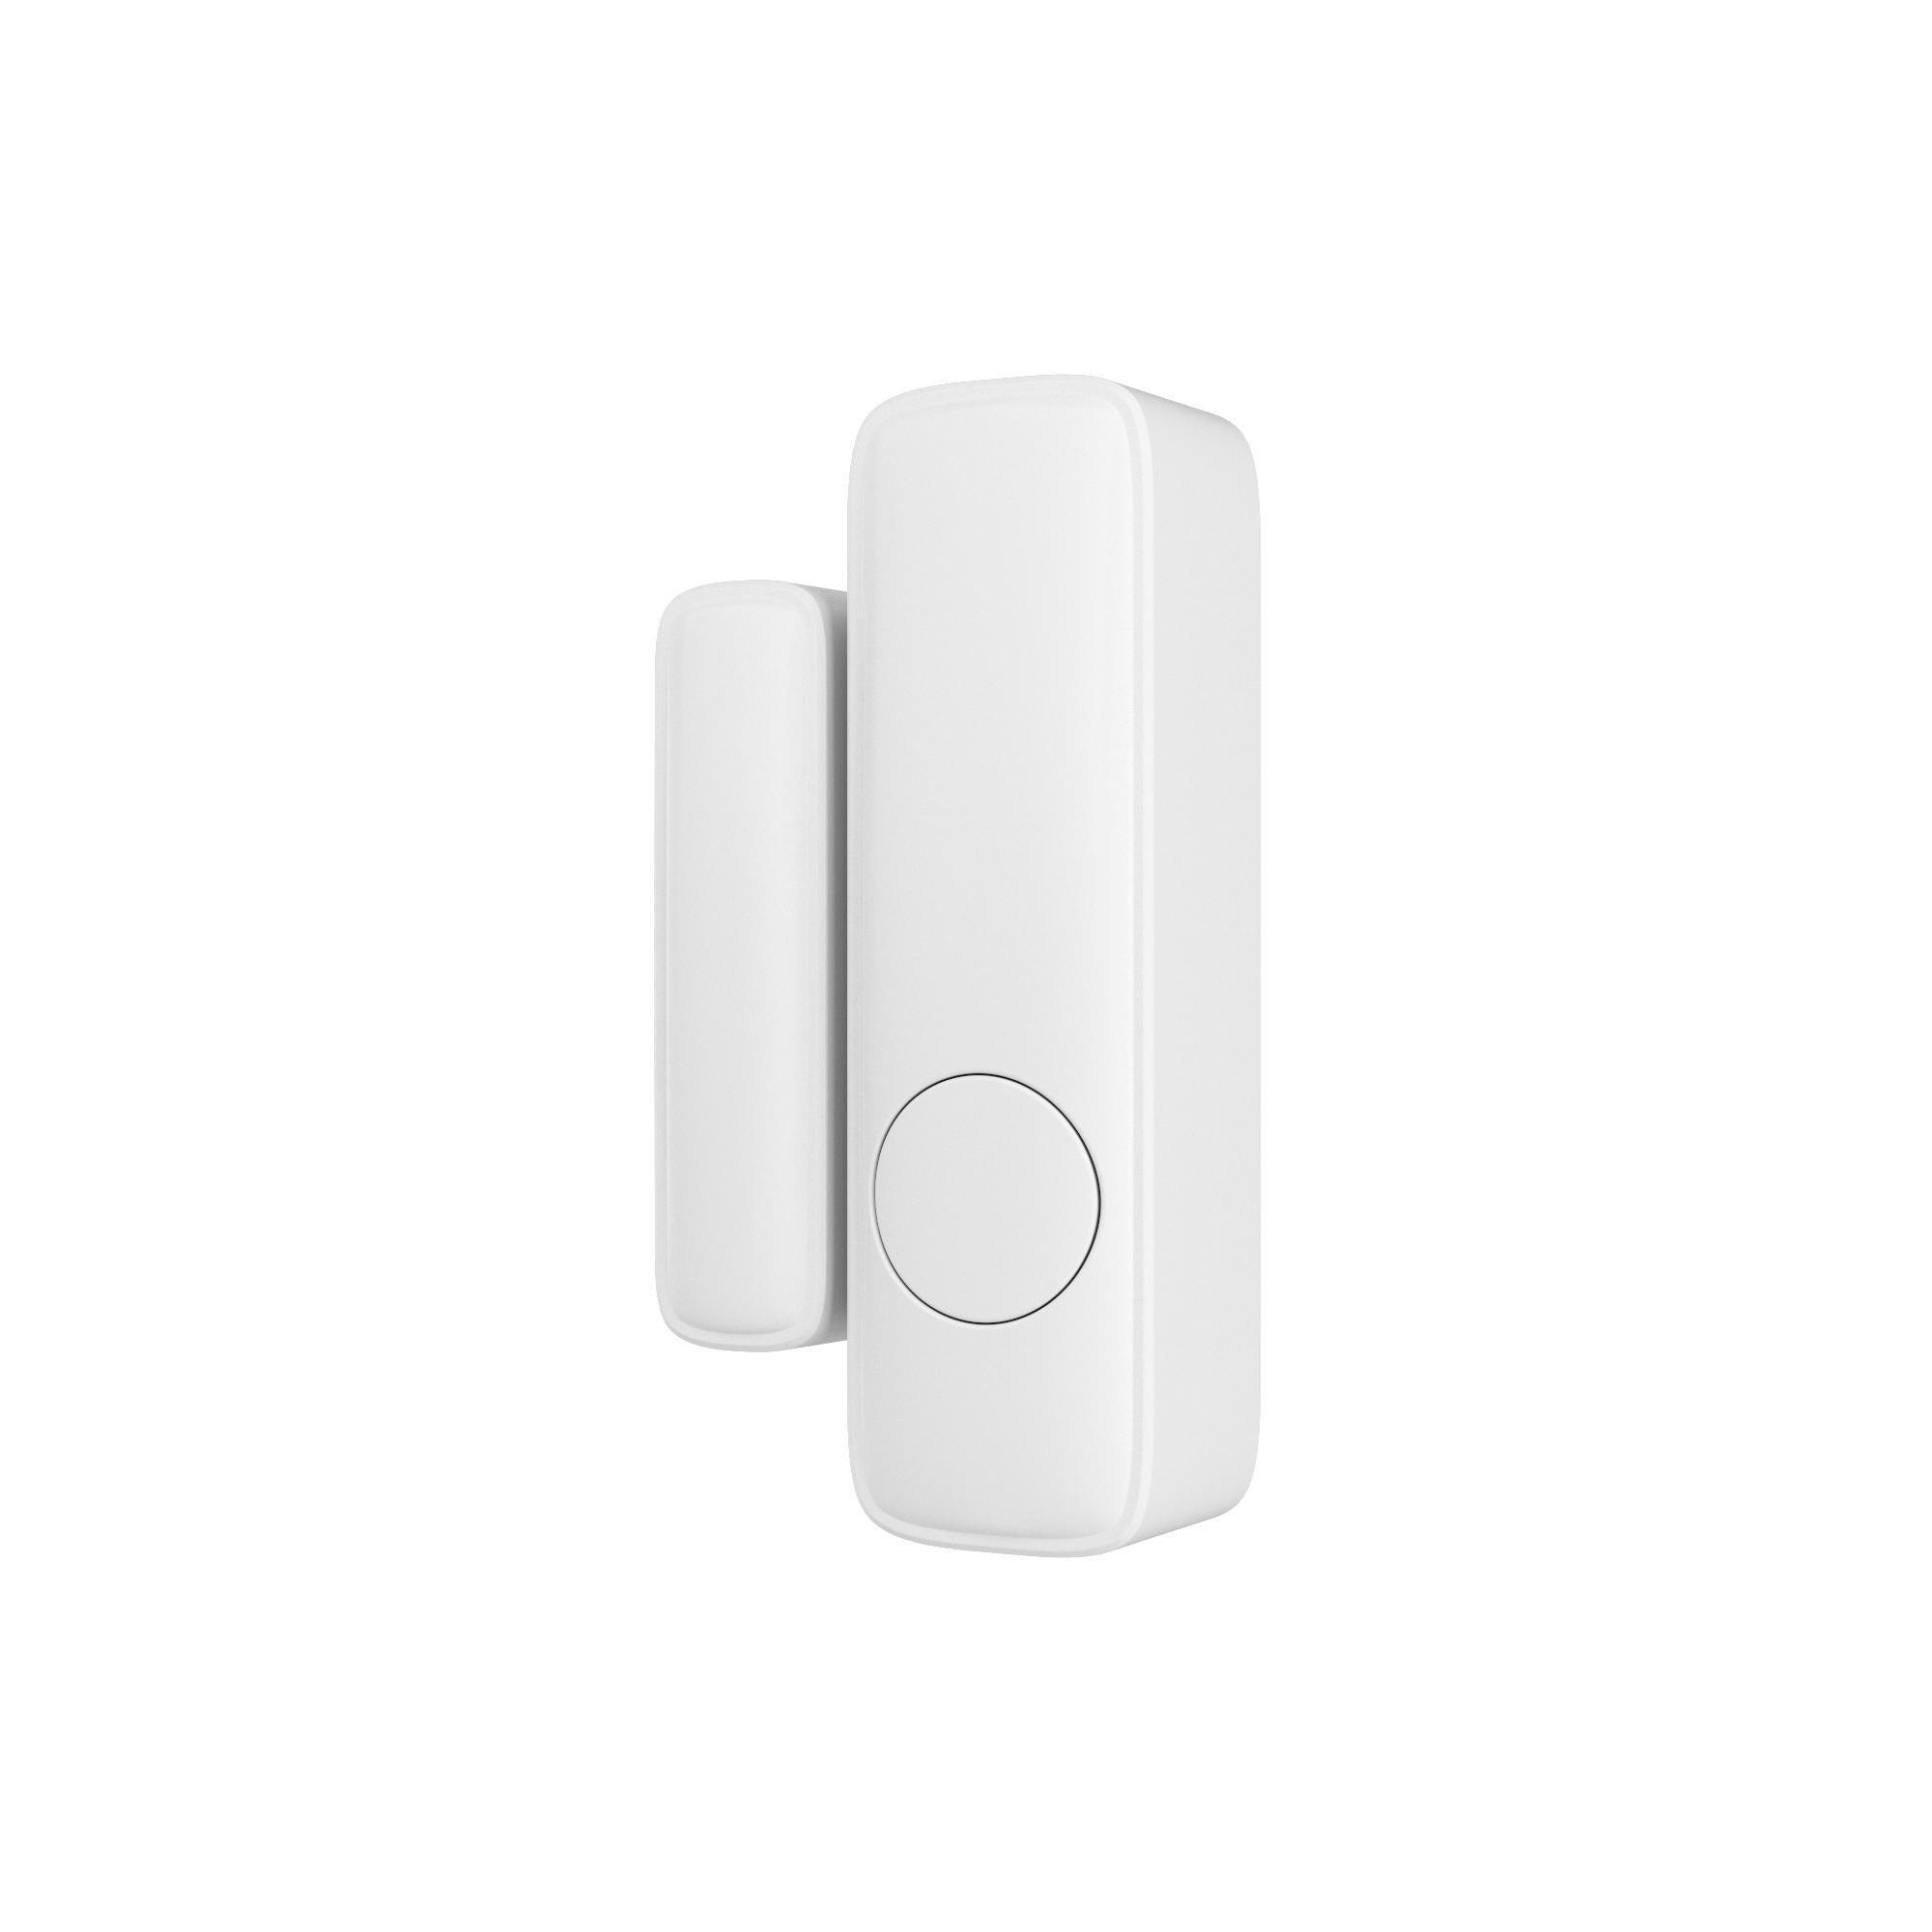 Daitem - [Détecteur d'ouverture] Ce nouveau détecteur d'ouverture miniature  permet de protéger les issues de votre habitation (porte d'entrée, fenêtre,  porte-fenêtre, baie vitrée…) en toute discrétion🤓. En cas d'intrusions, le  système d'alarme